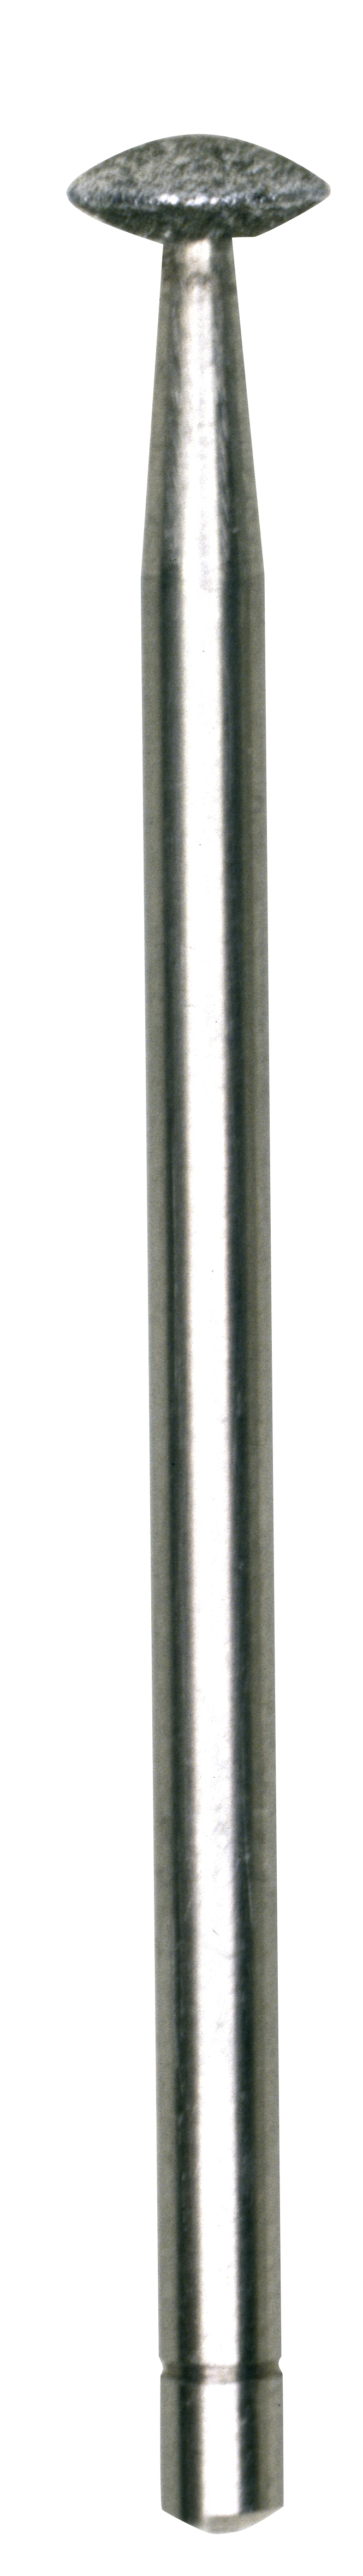 PROXXON Diamantschleifstift Linse 5 mm 